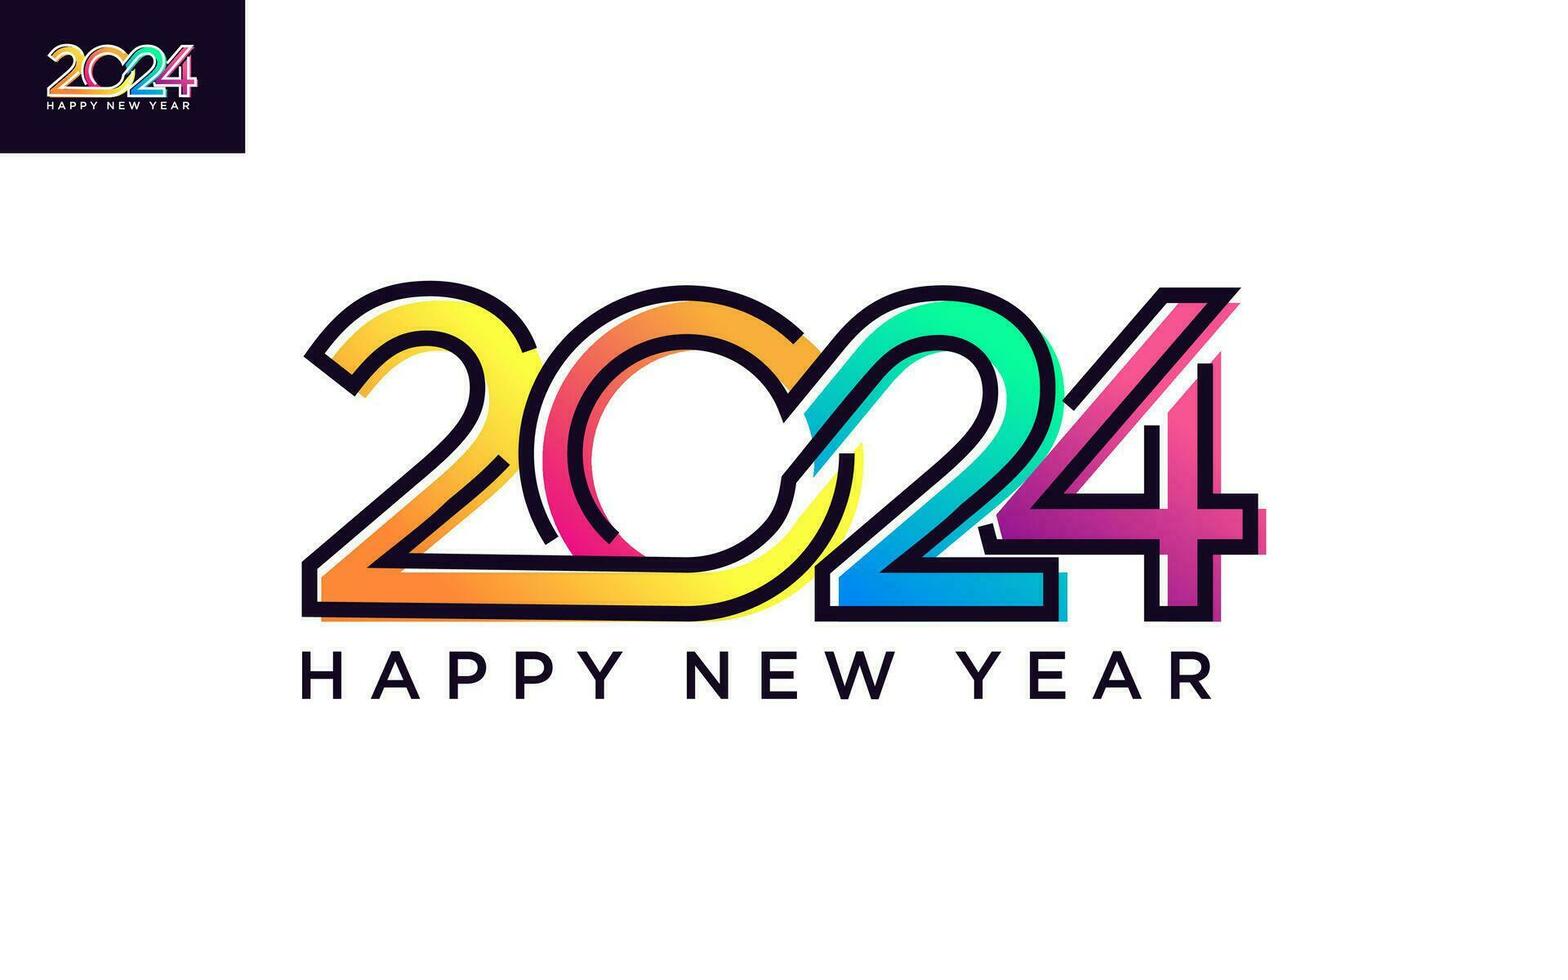 moderno vector gráfico de 2024 logo contento nuevo año, texto 2024 modelo vector editable y redimensionable eps 10